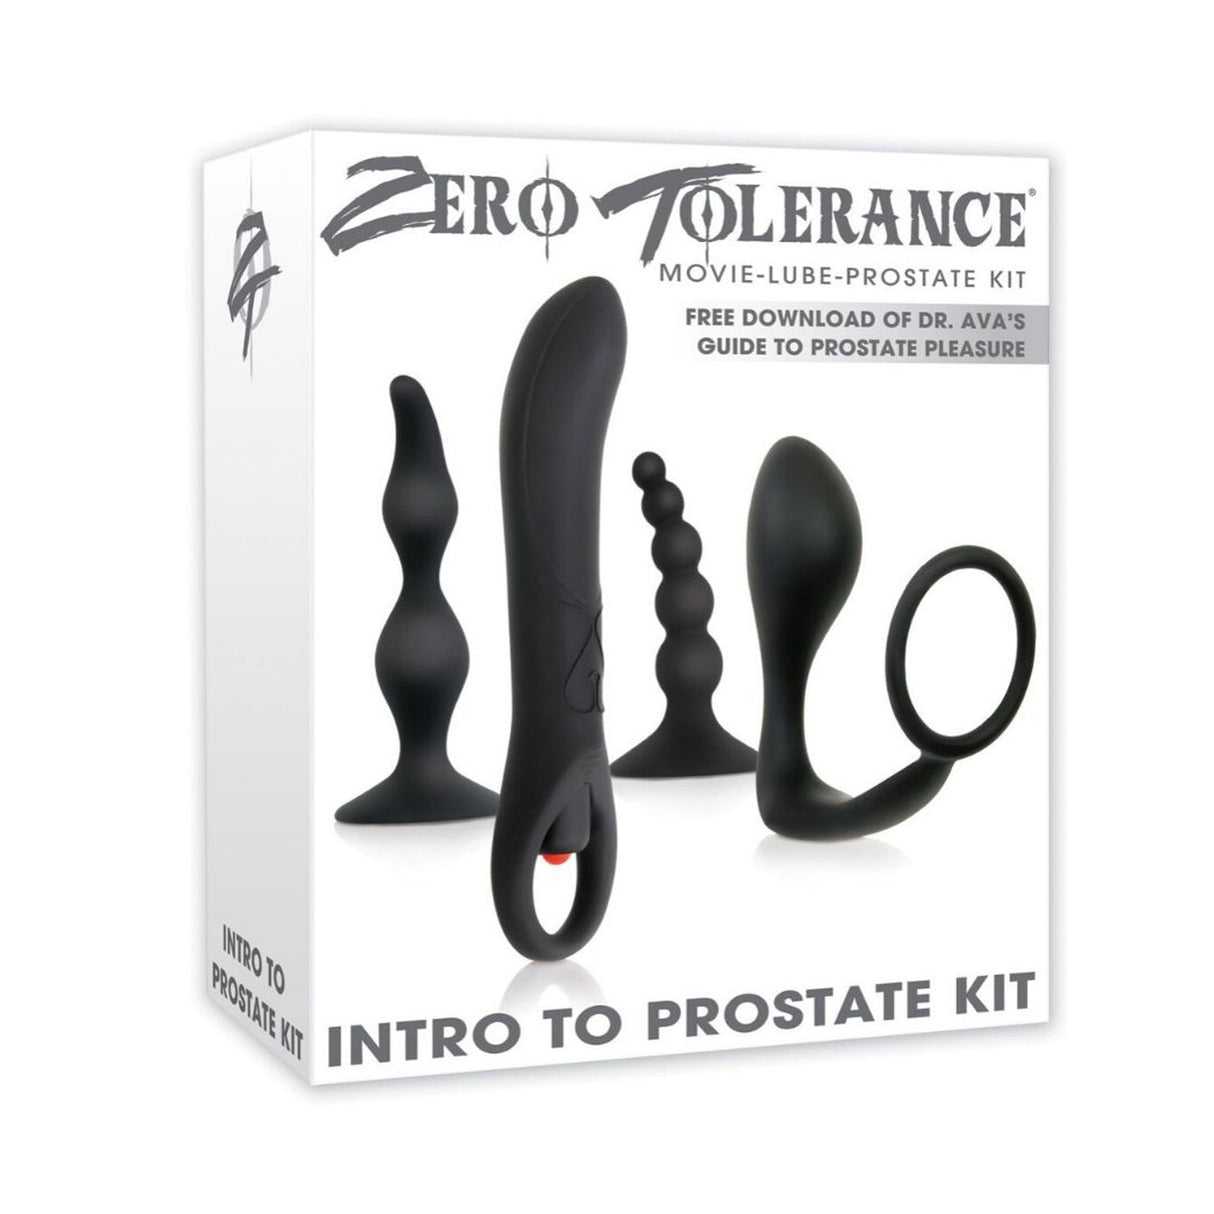 Zero Tolerance Intro To Prostate Kit